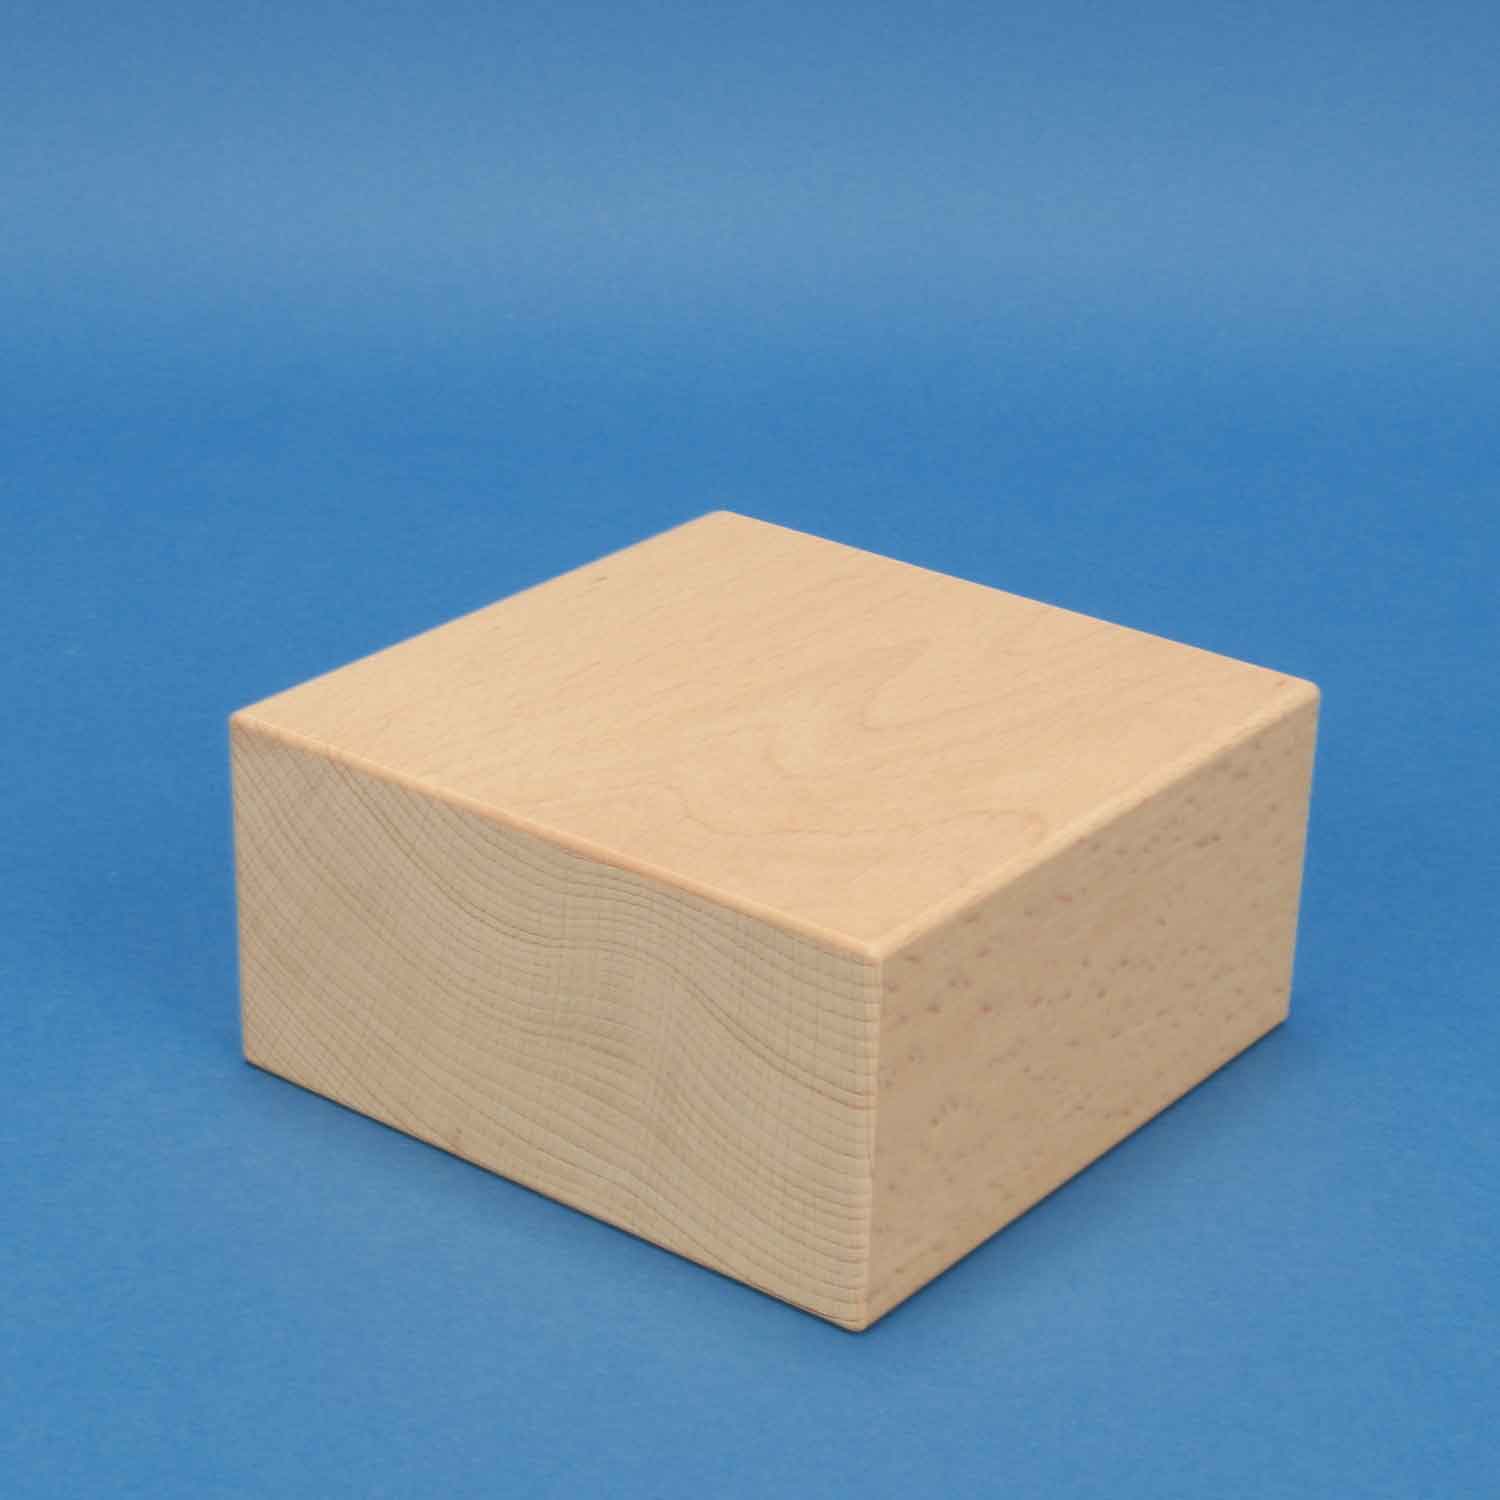 Clancy Verouderd versneller extra grote houten blokken 12 x 12 x 6 cm | grote houten blokken 12 x 6 cm  | houten vierkante blokken | houten blokken per stuk | Houten blokken |  tischlerschuppen.de